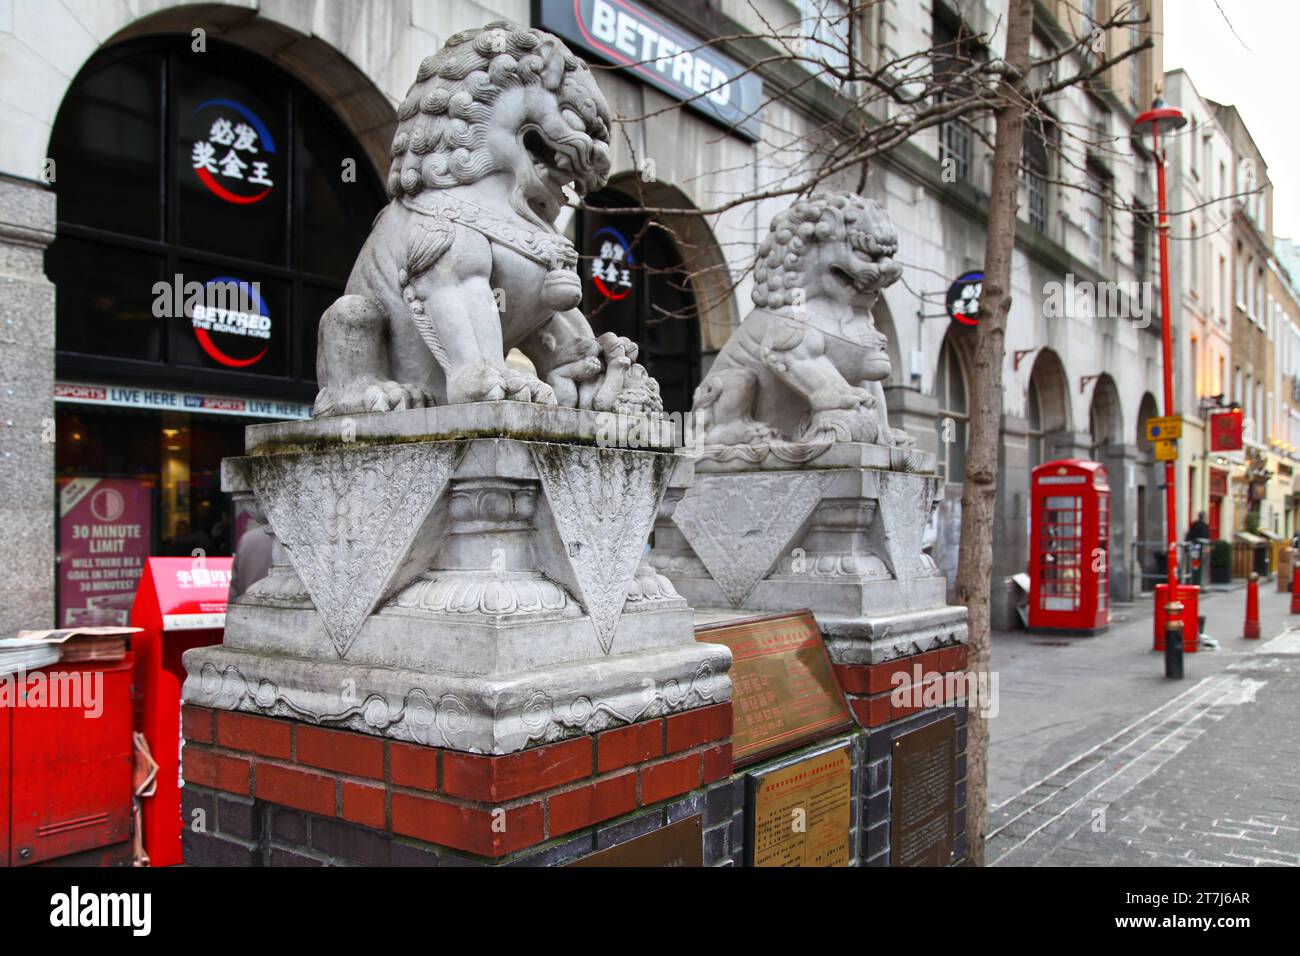 Londres, Angleterre - décembre 21 2012 : couple de lions de pierre au milieu de Gerrard Street, face à Macclesfield Street. Cet endroit connu sous le nom de Chinatown i. Banque D'Images